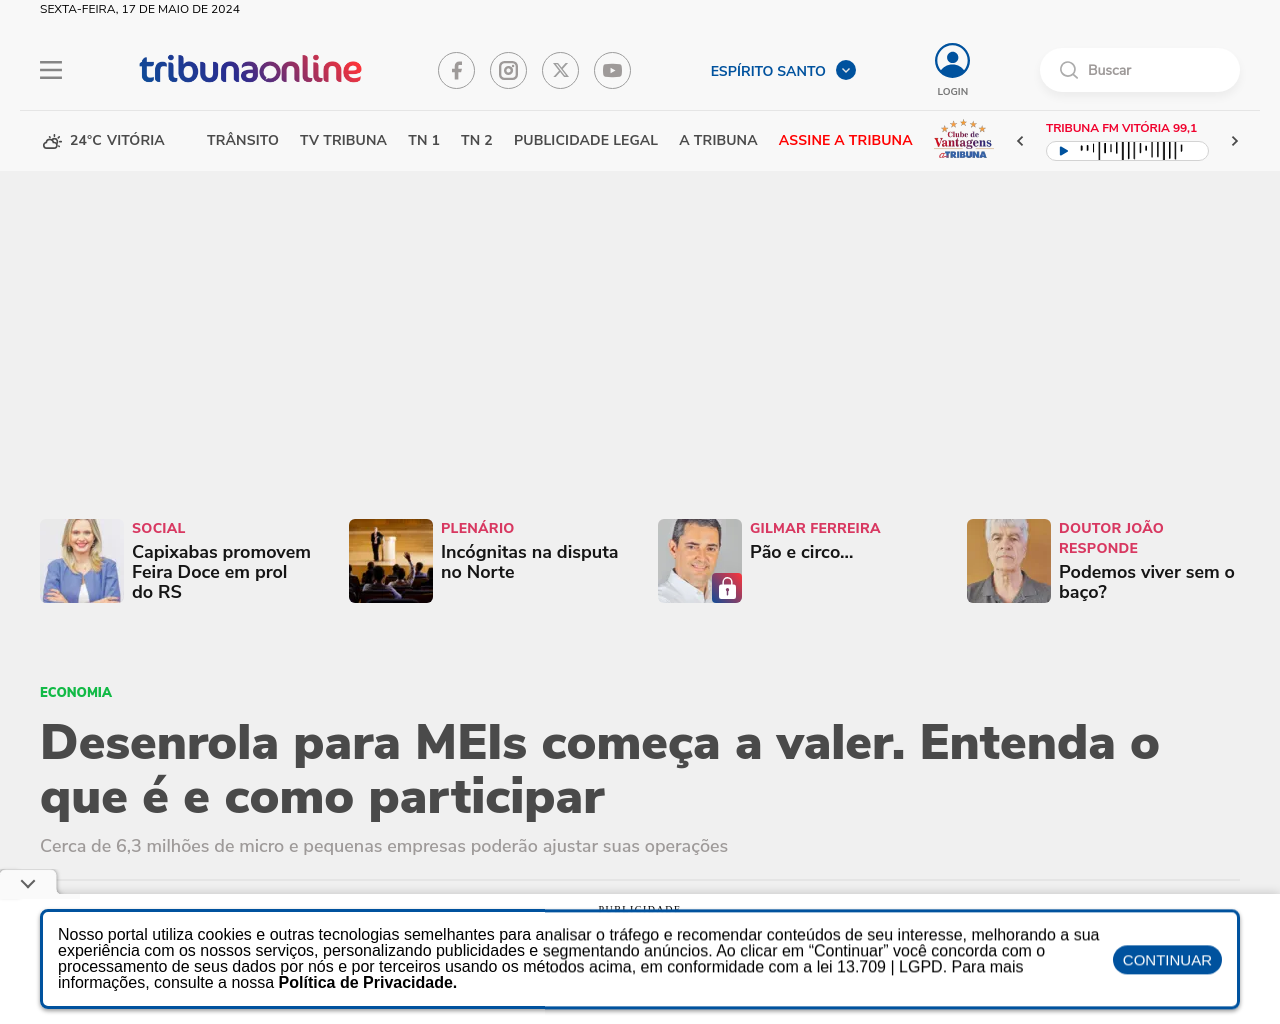 tribunaonline.com.br